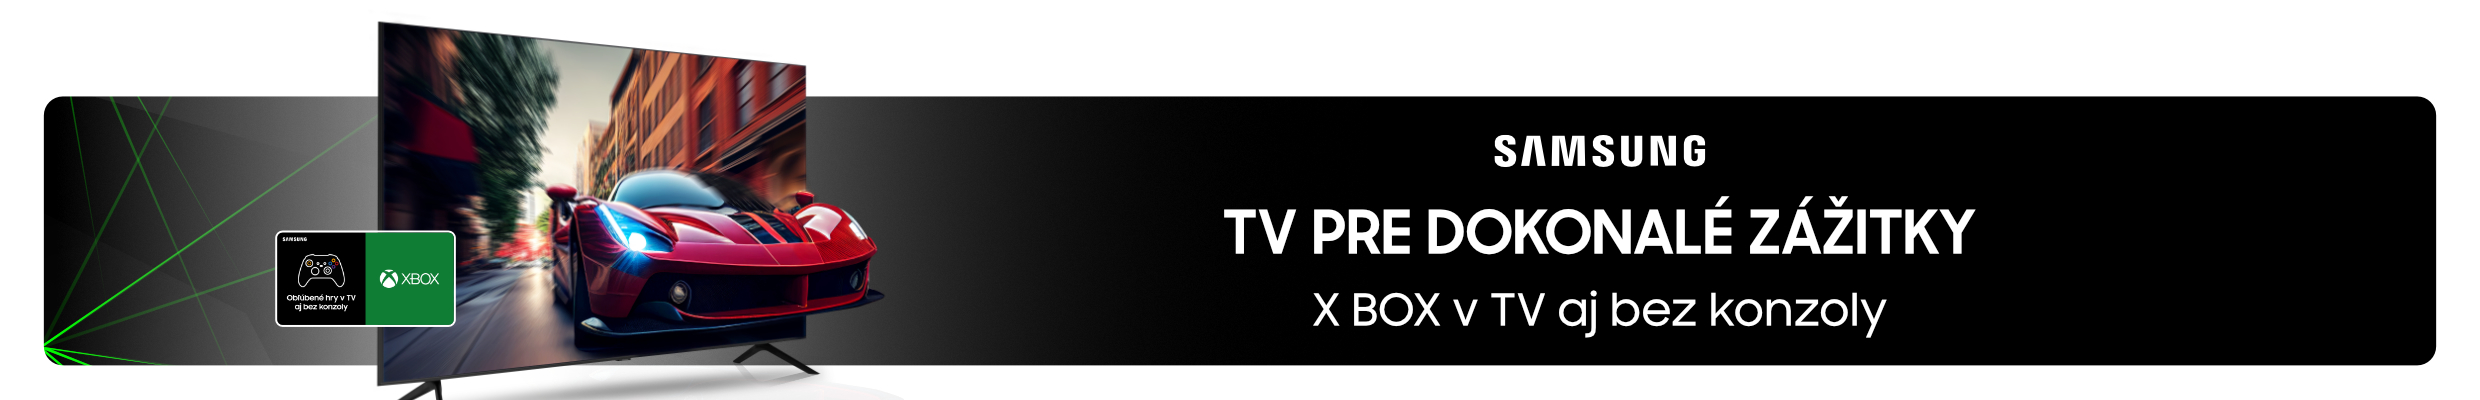 Samsung TV XBOX produkt